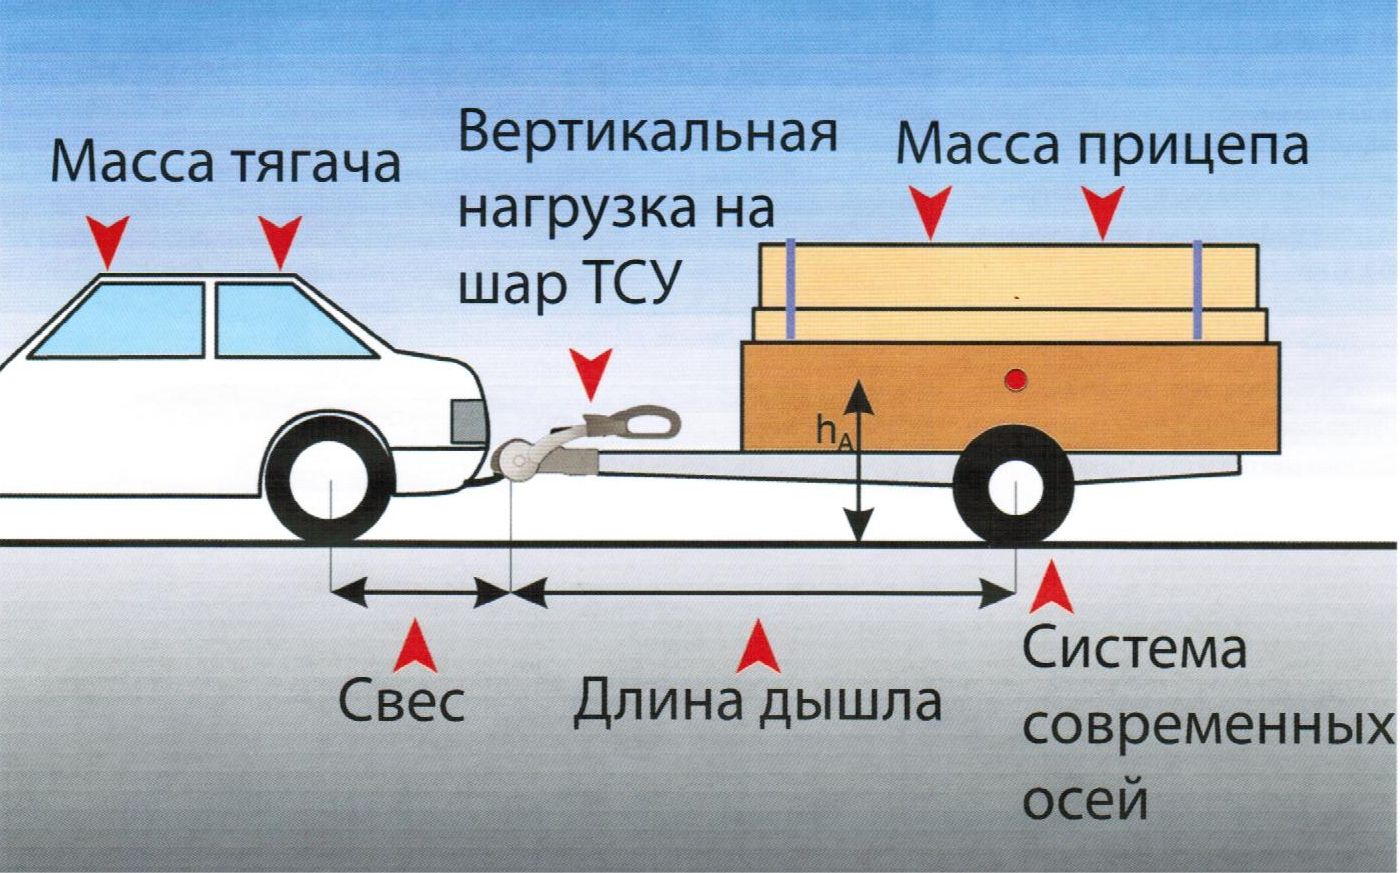 Критерии хороших ходовых качеств автопоезда (идеальный автопоезд)